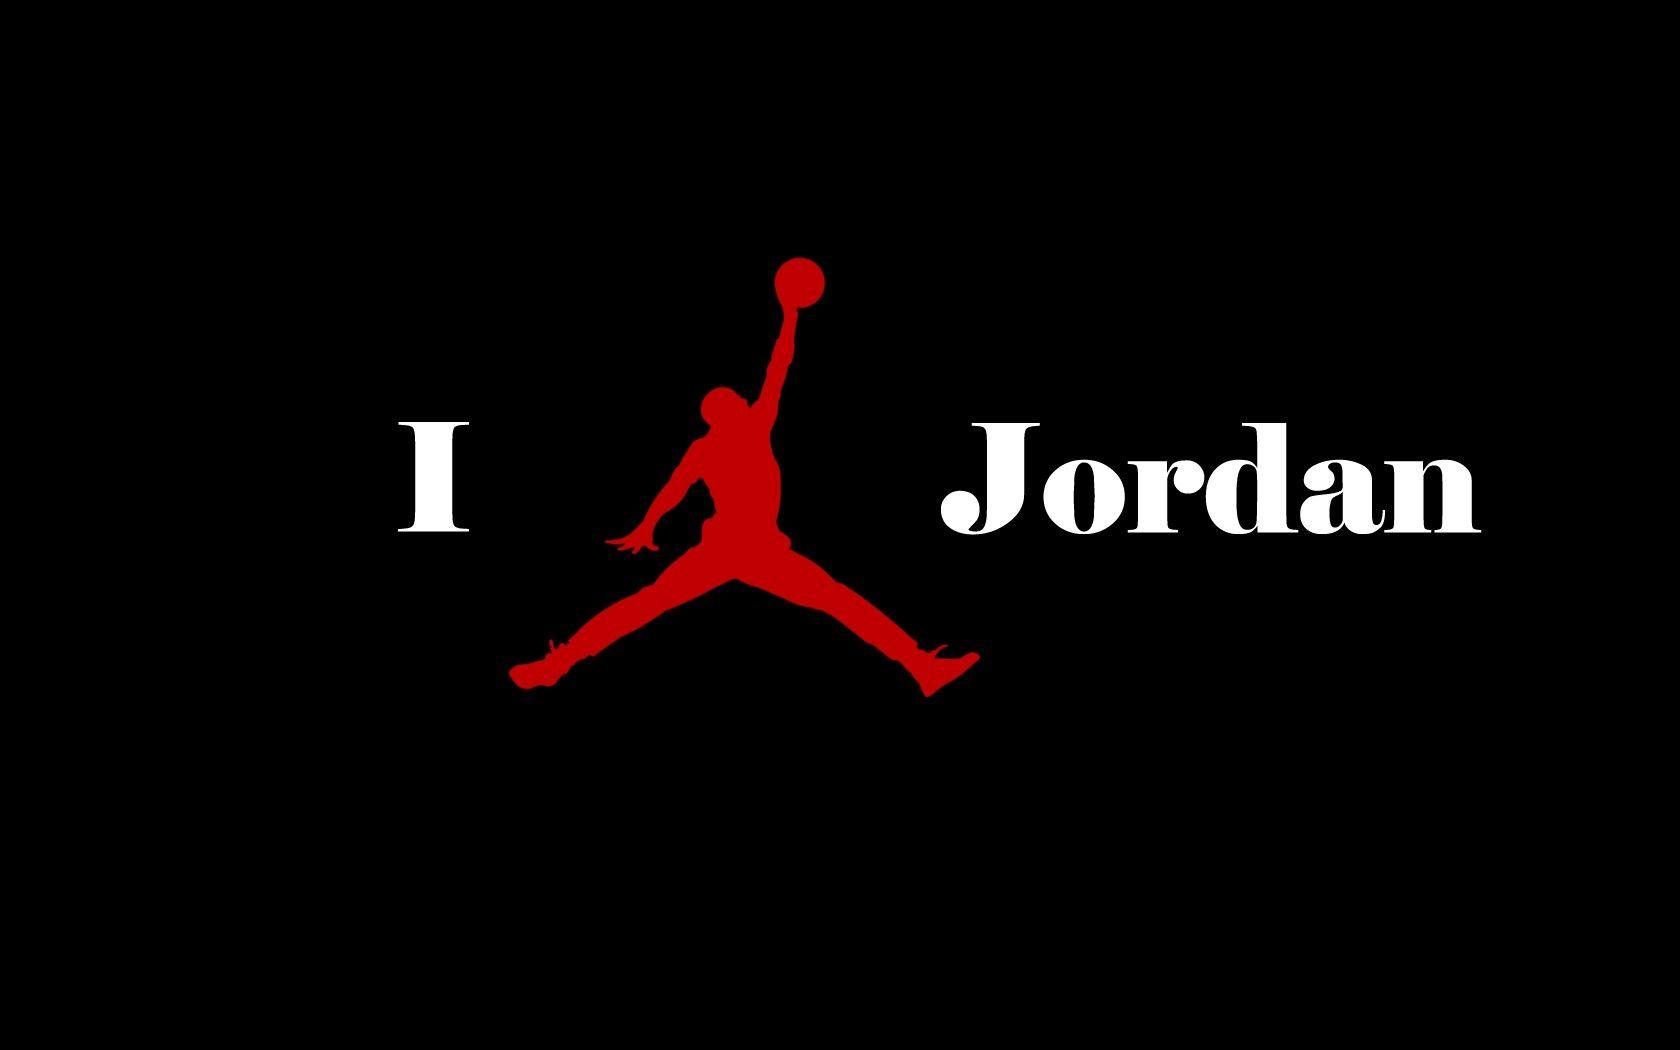 Michael Air Jordan Logo - Michael jordan symbol wallpaper - SF Wallpaper